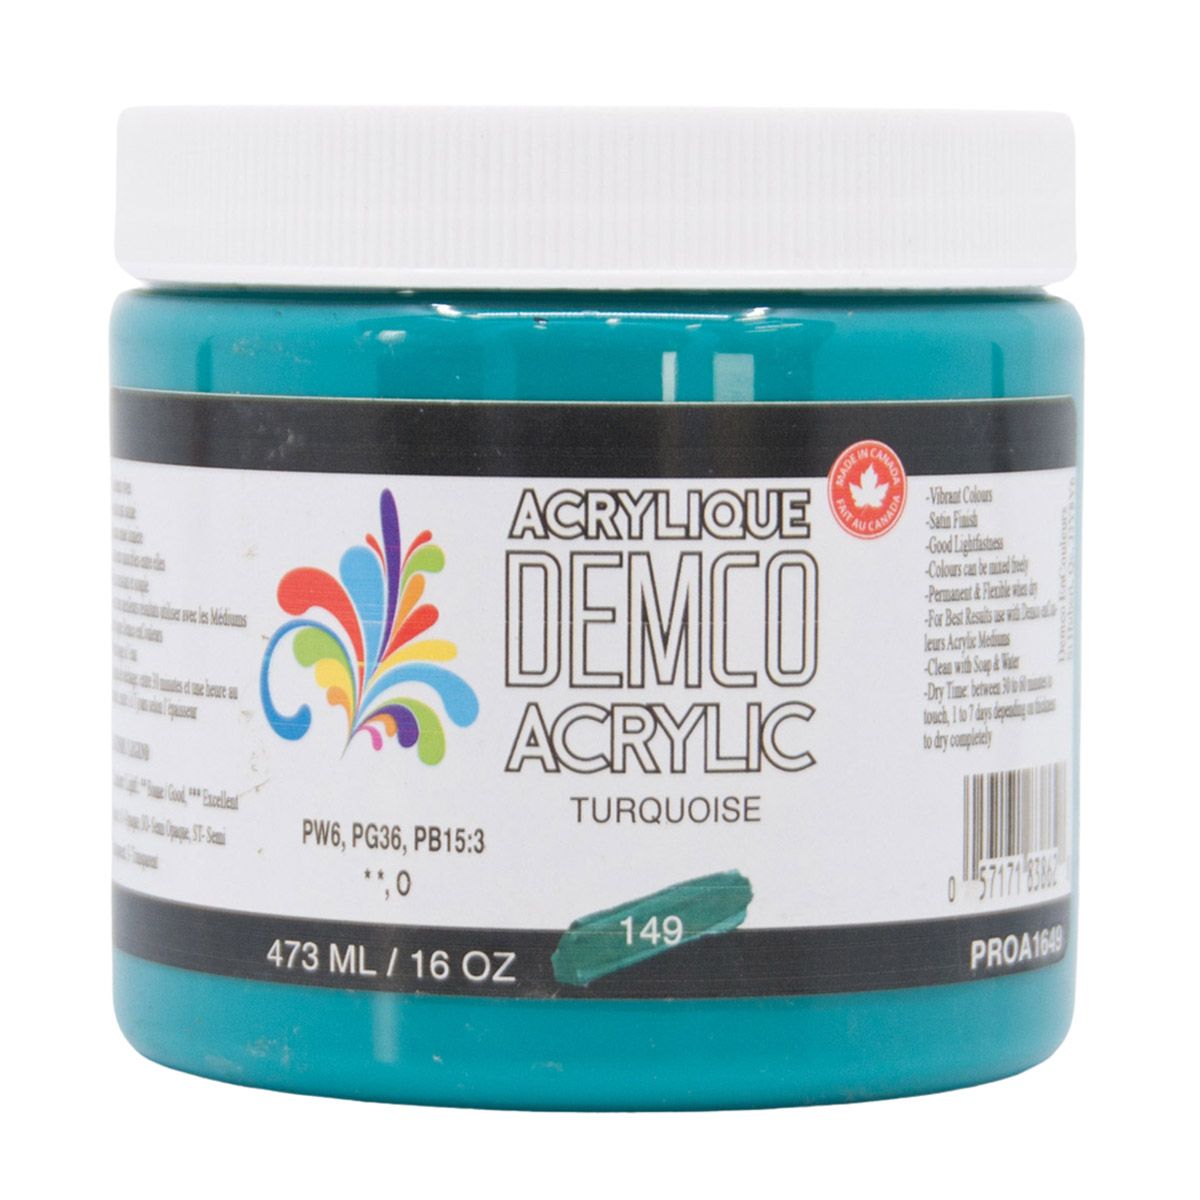 Demco Acrylic Turquoise 473ml/16oz